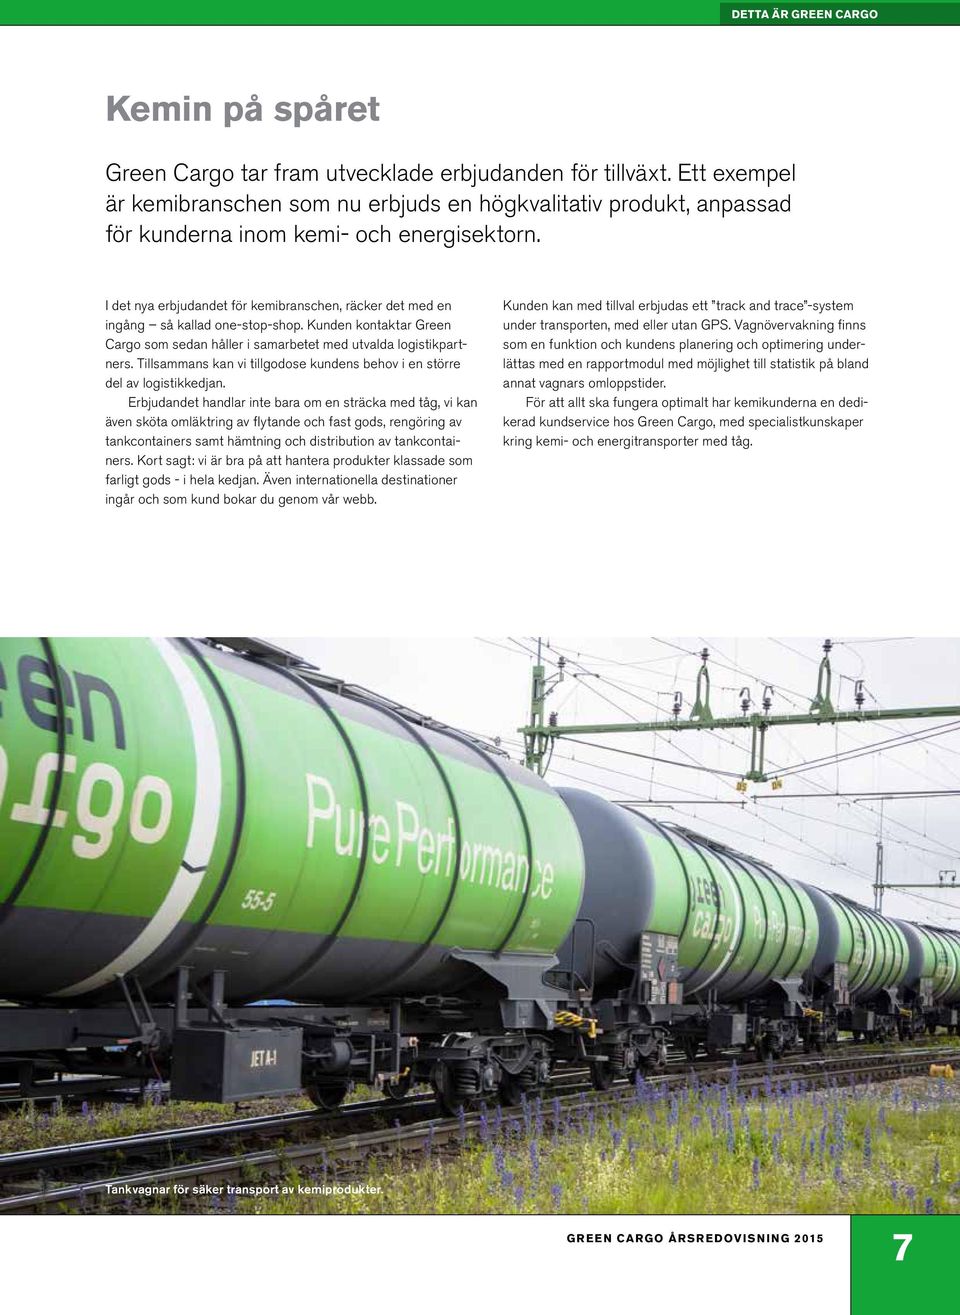 I det nya erbjudandet för kemibranschen, räcker det med en ingång så kallad one-stop-shop. Kunden kontaktar Green Cargo som sedan håller i samarbetet med utvalda logistikpartners.